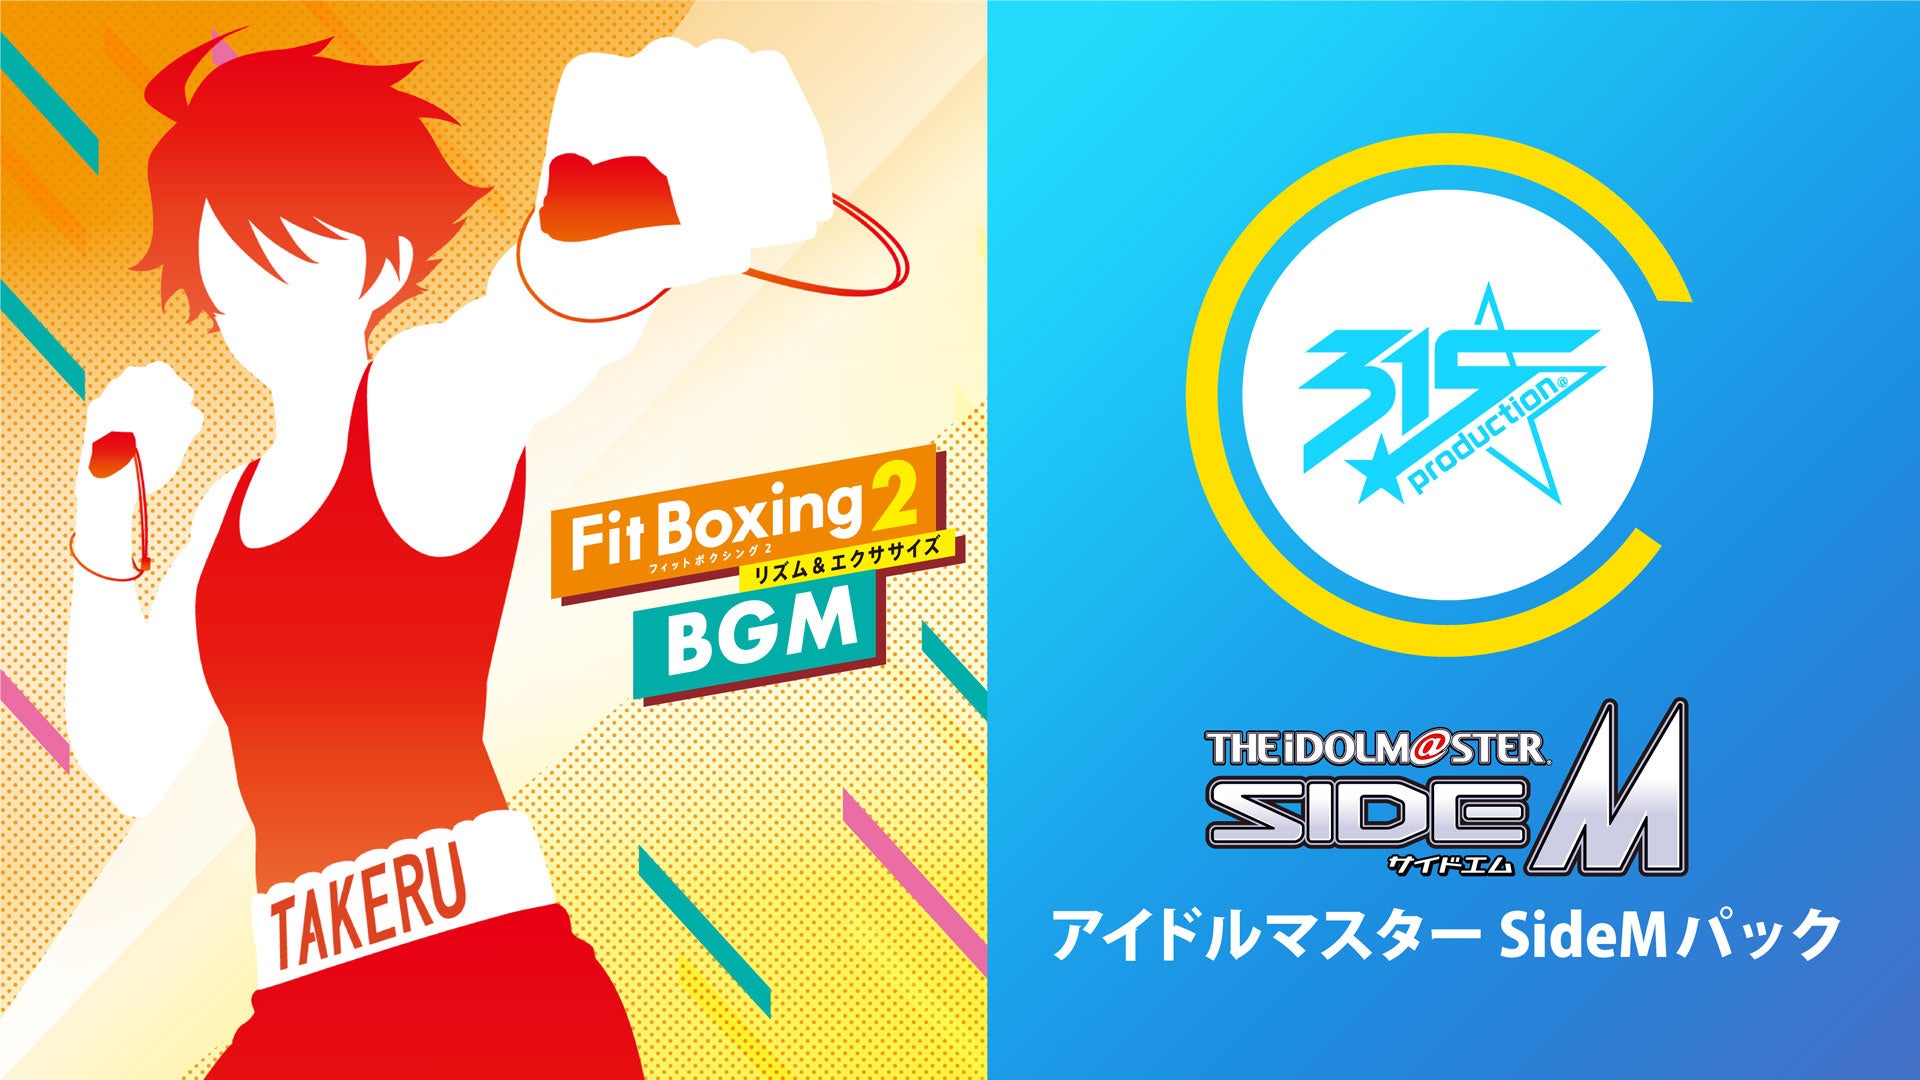 Nintendo Switch ソフト「Fit Boxing 2 -リズム＆エクササイズ-」BGM追加ダウンロードコンテンツ「アイドルマスター SideMパック」配信開始のお知らせ